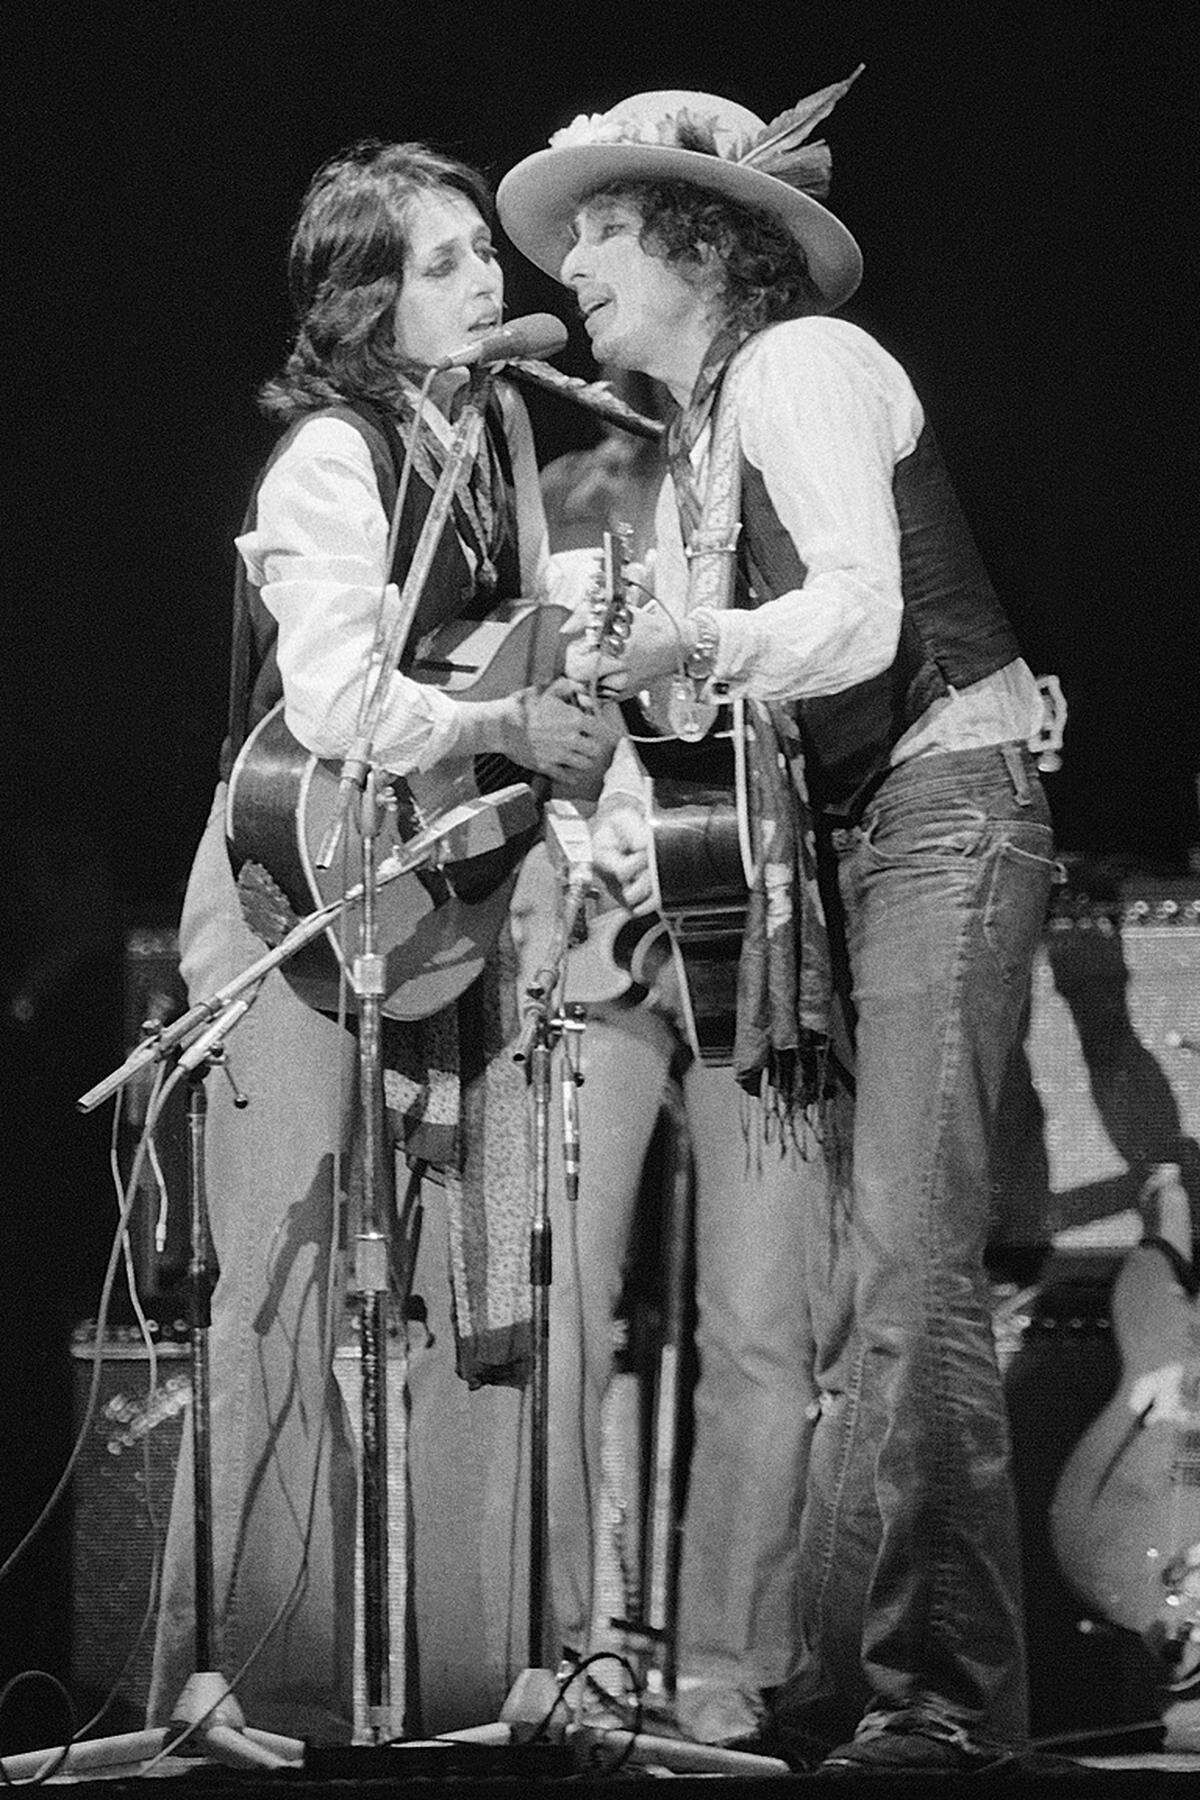 Im Bild: Mit seinem weiblichen Pendant, der sozialkritischen Folk-Sängerin Joan Baez, gab Dylan 1975 im New Yorker Madison Square Garden ein Konzert.